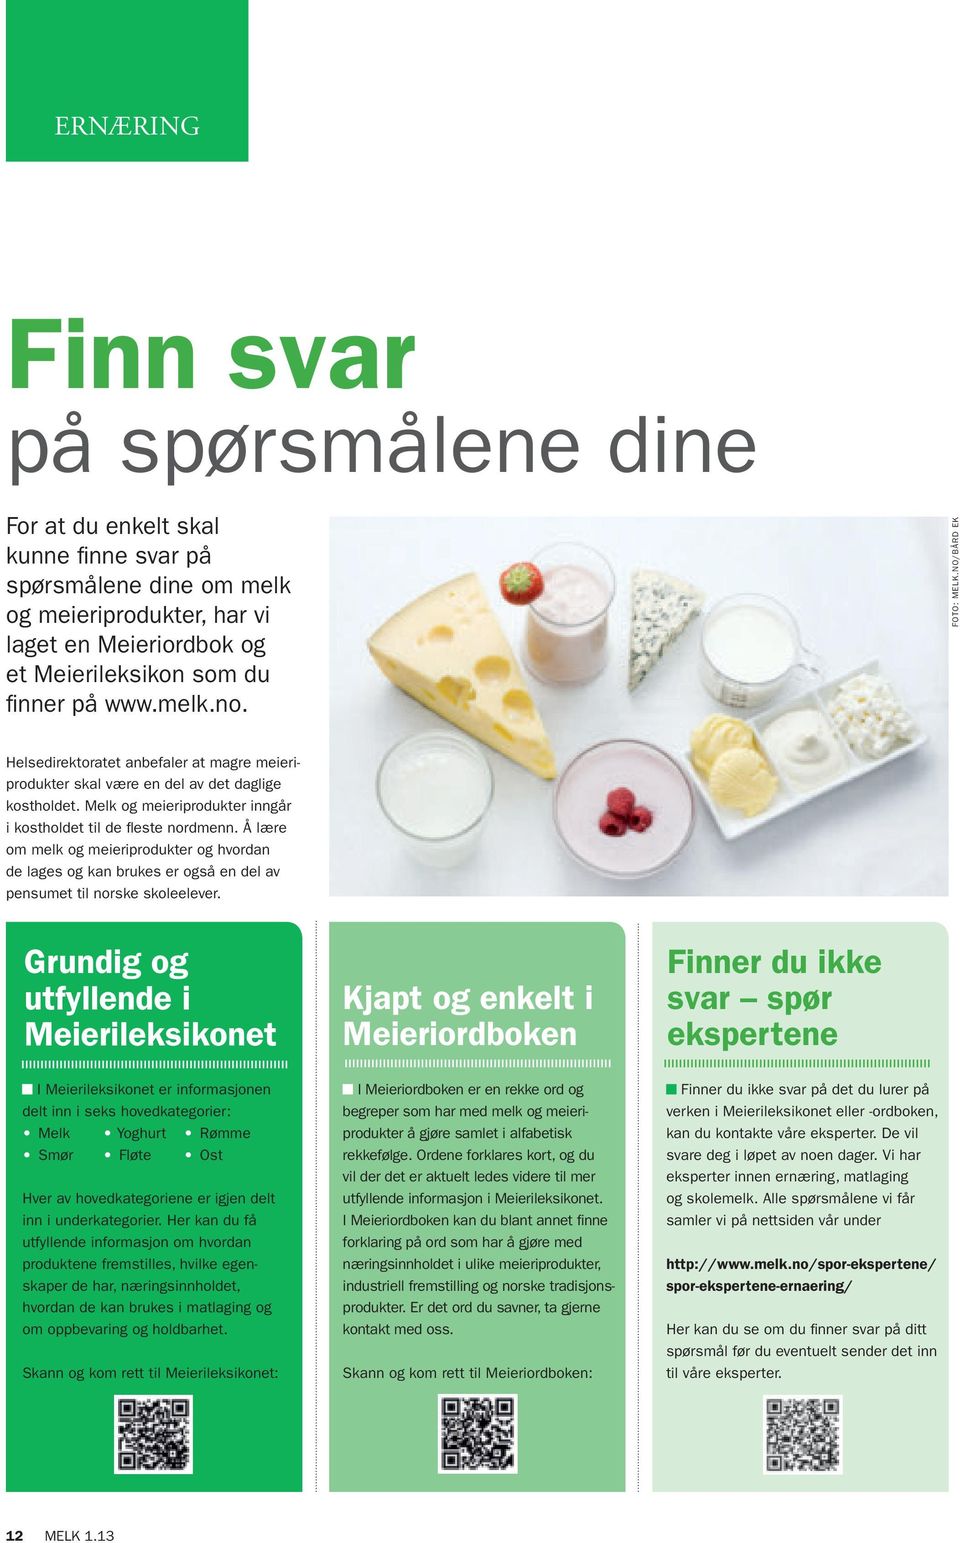 Å lære om melk og meieriprodukter og hvordan de lages og kan brukes er også en del av pensumet til norske skoleelever.